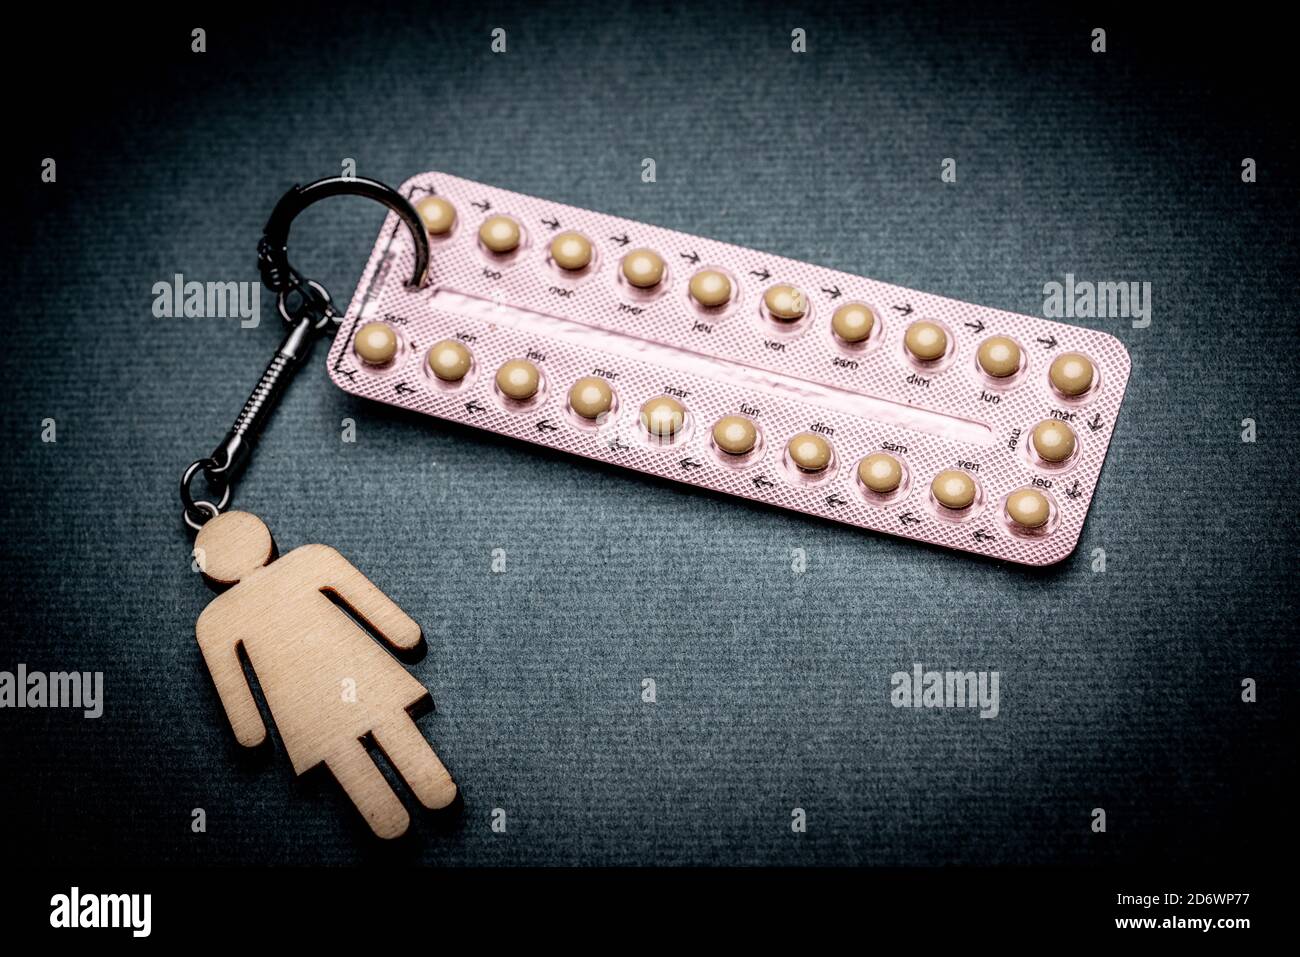 Confezione di pillole contraccettive attaccata a un portachiavi. Foto Stock